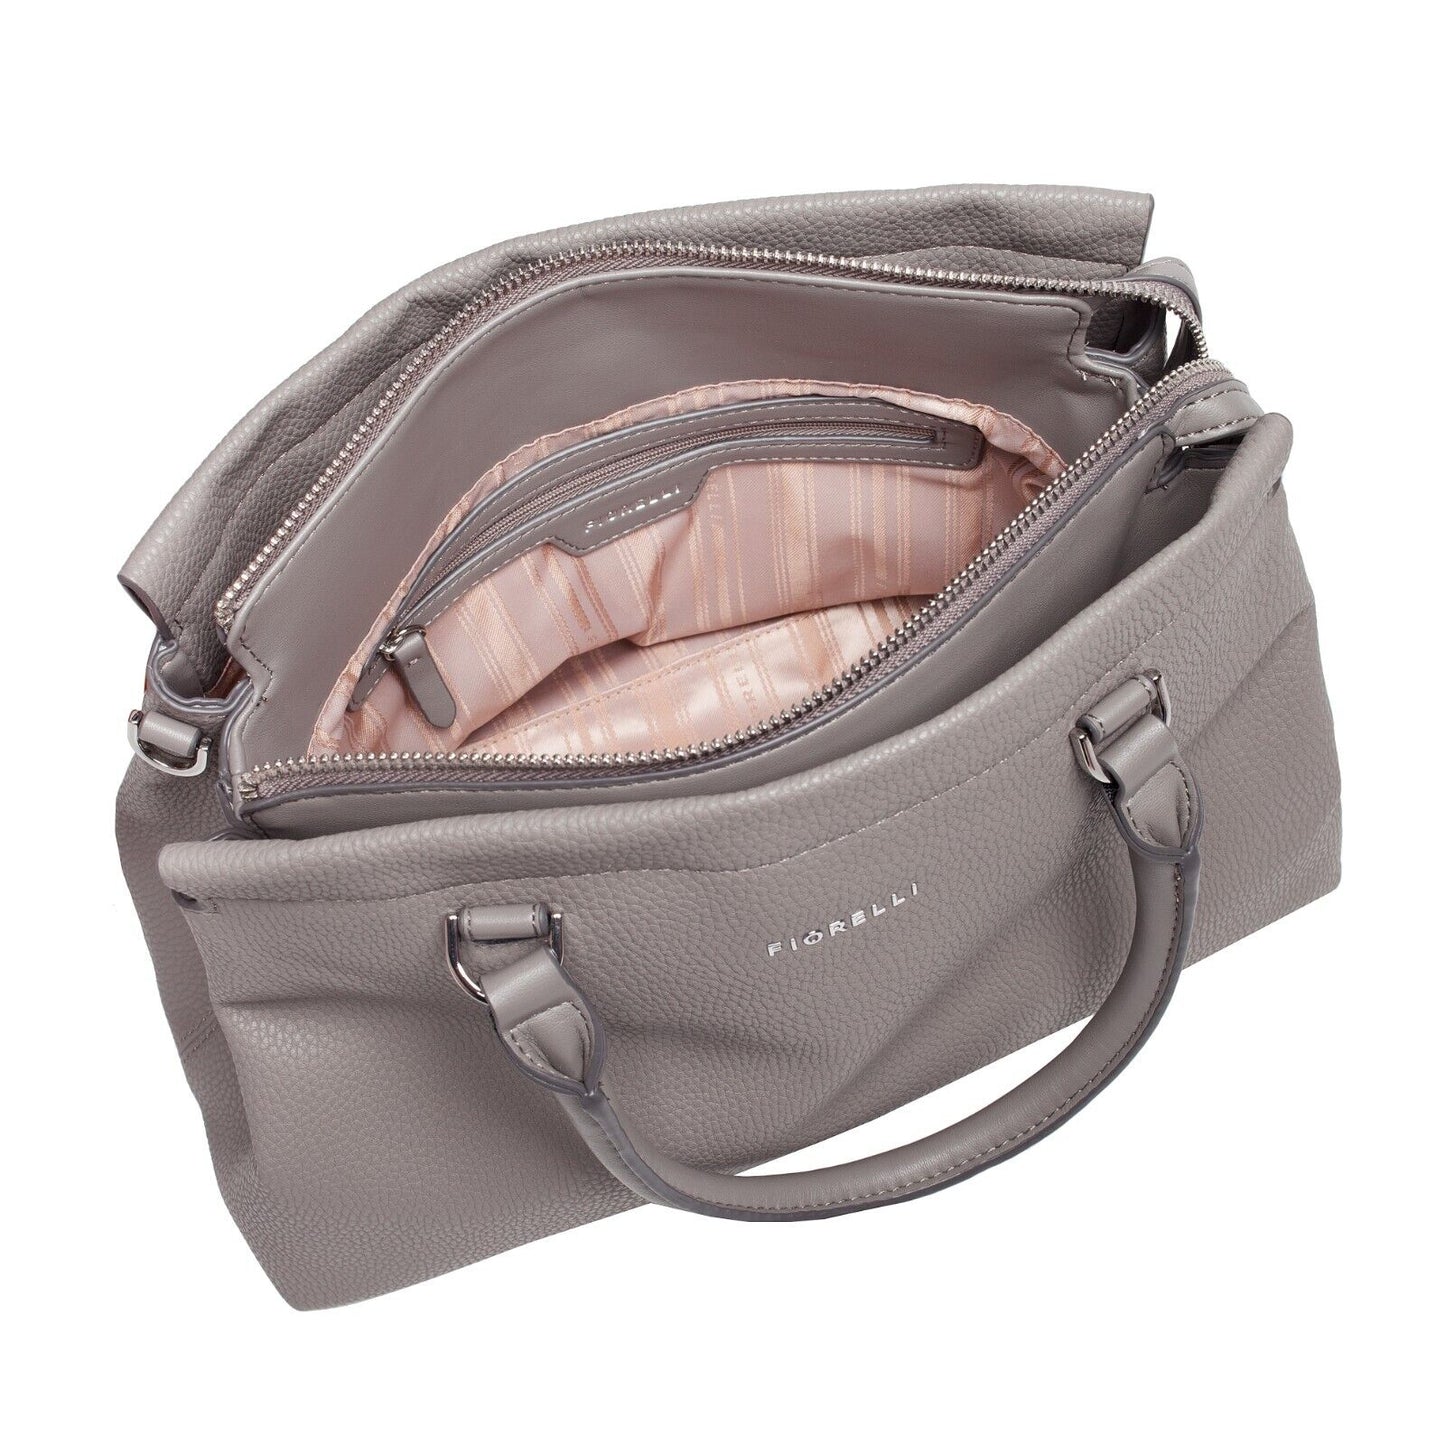 Fiorelli Colette Steel Grab Handbag Medium RRP £65